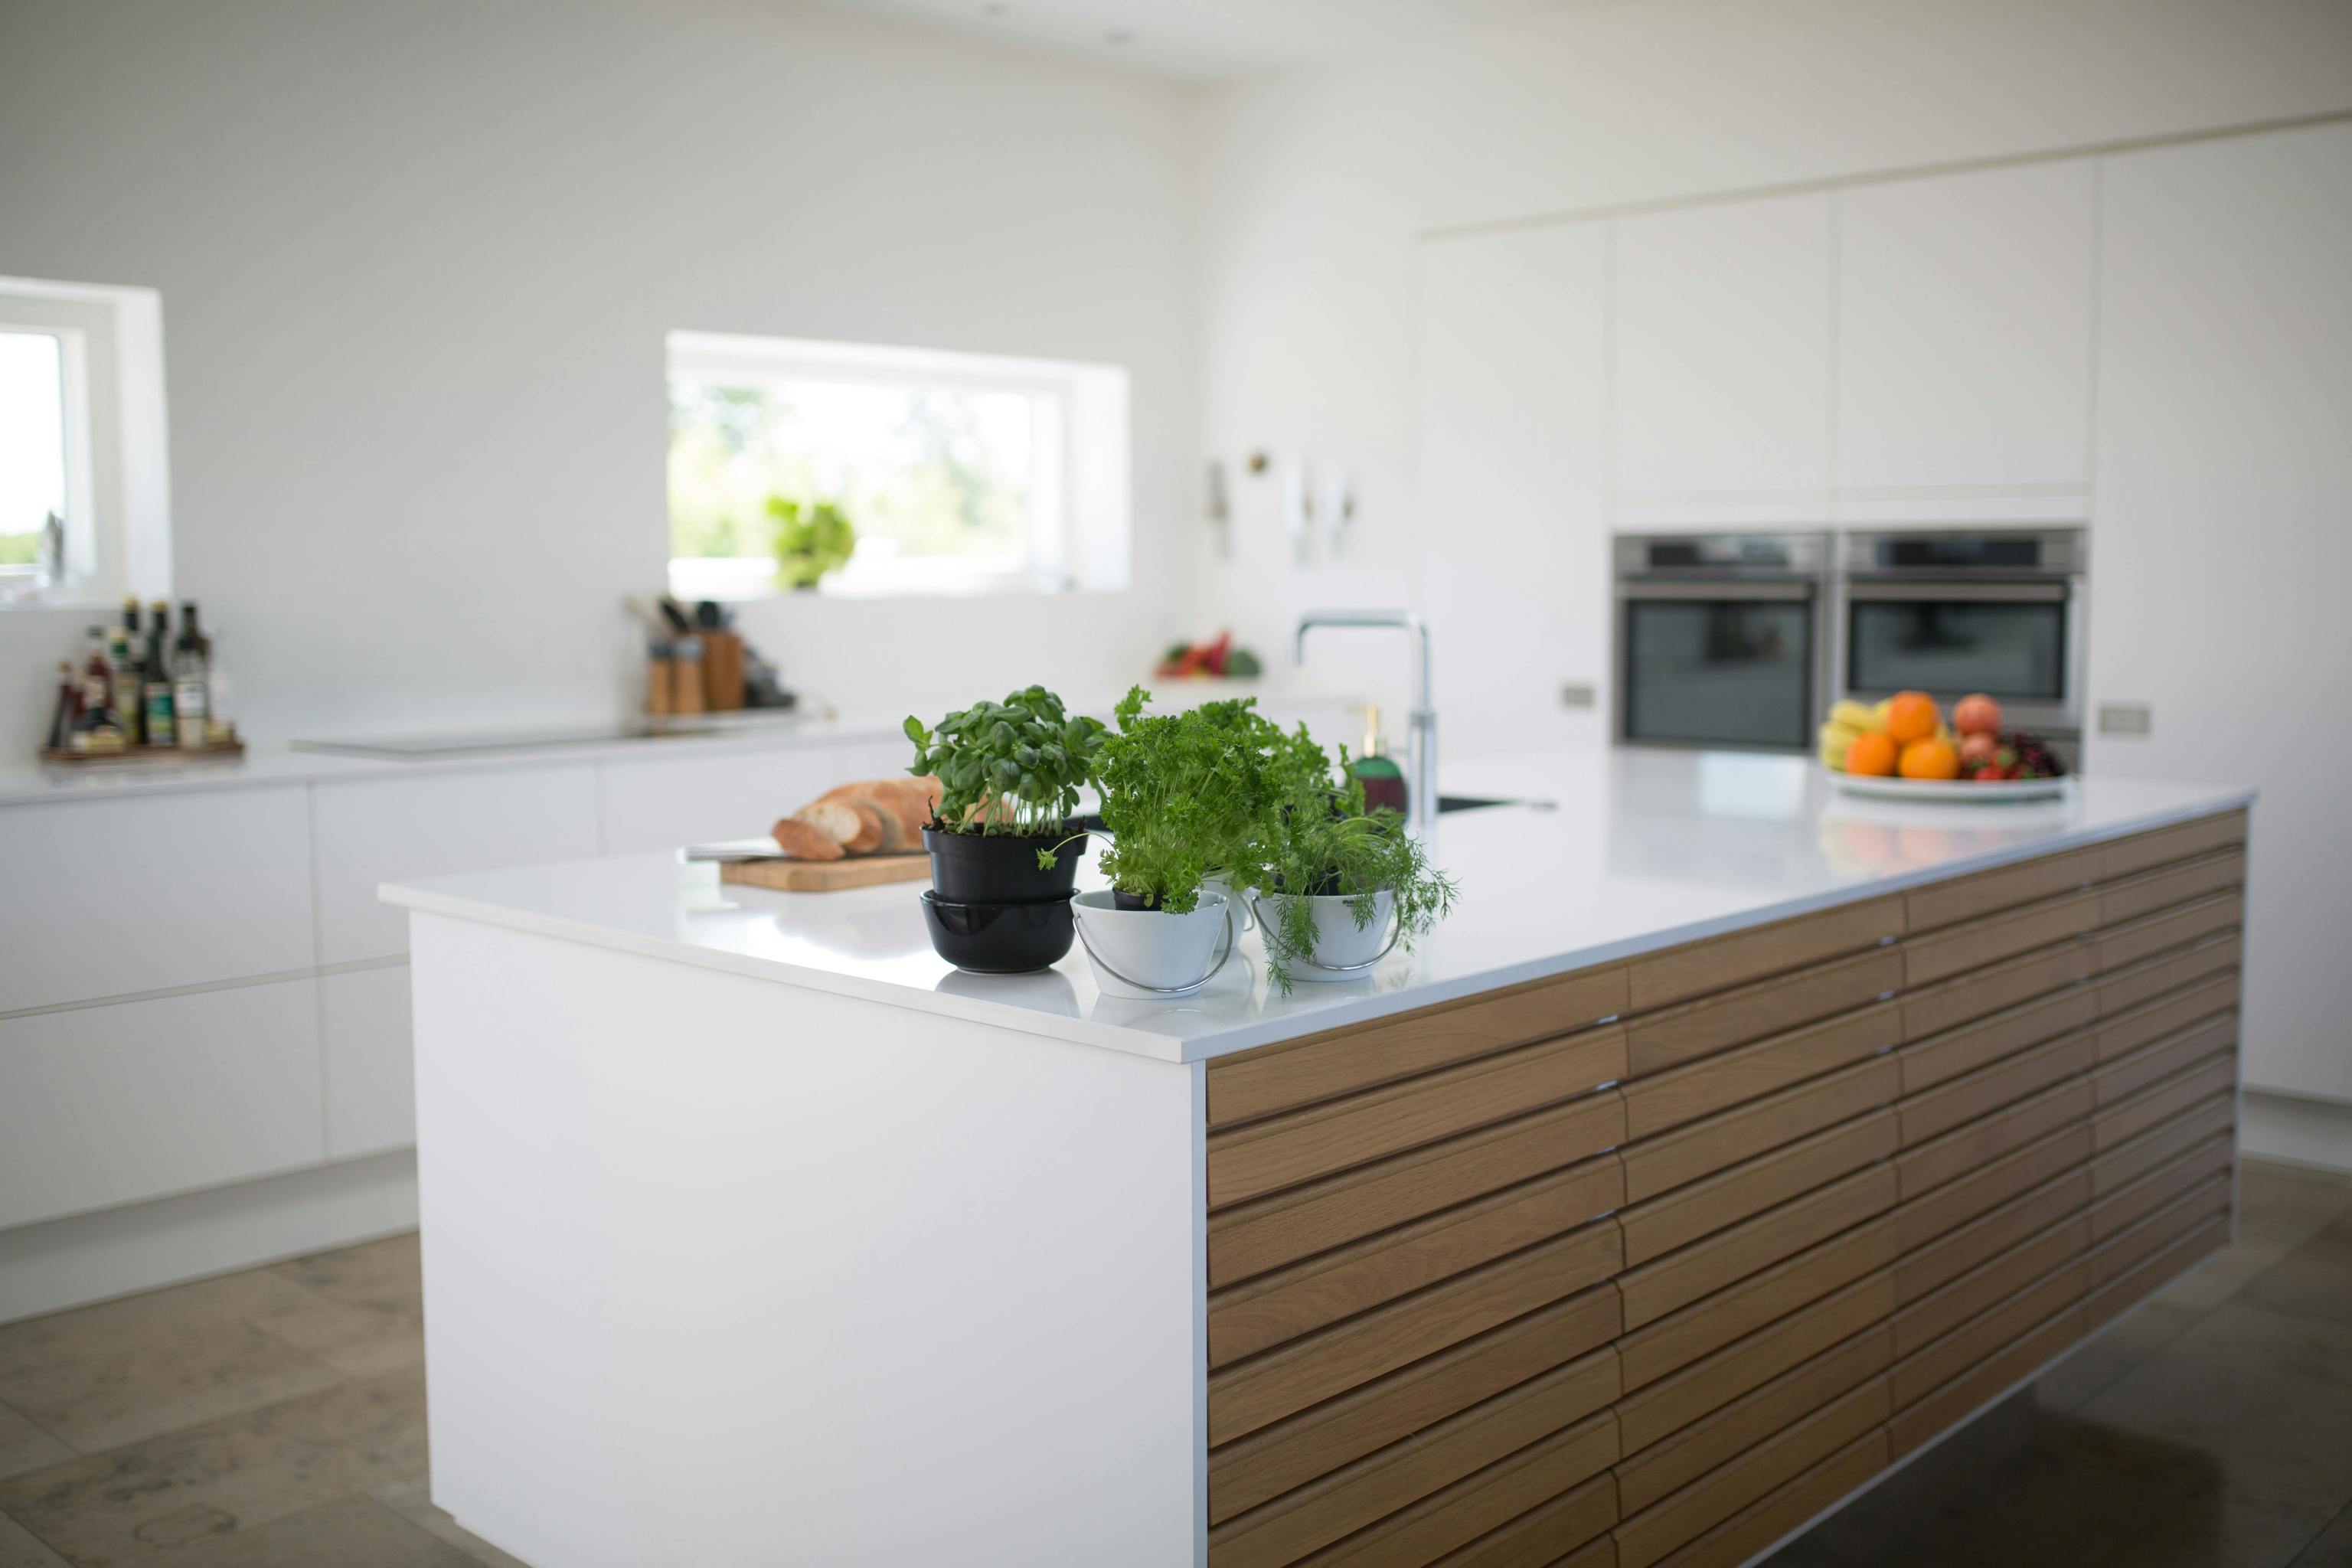 Decorar la cocina con un toque moderno: elementos decorativos con personalidad